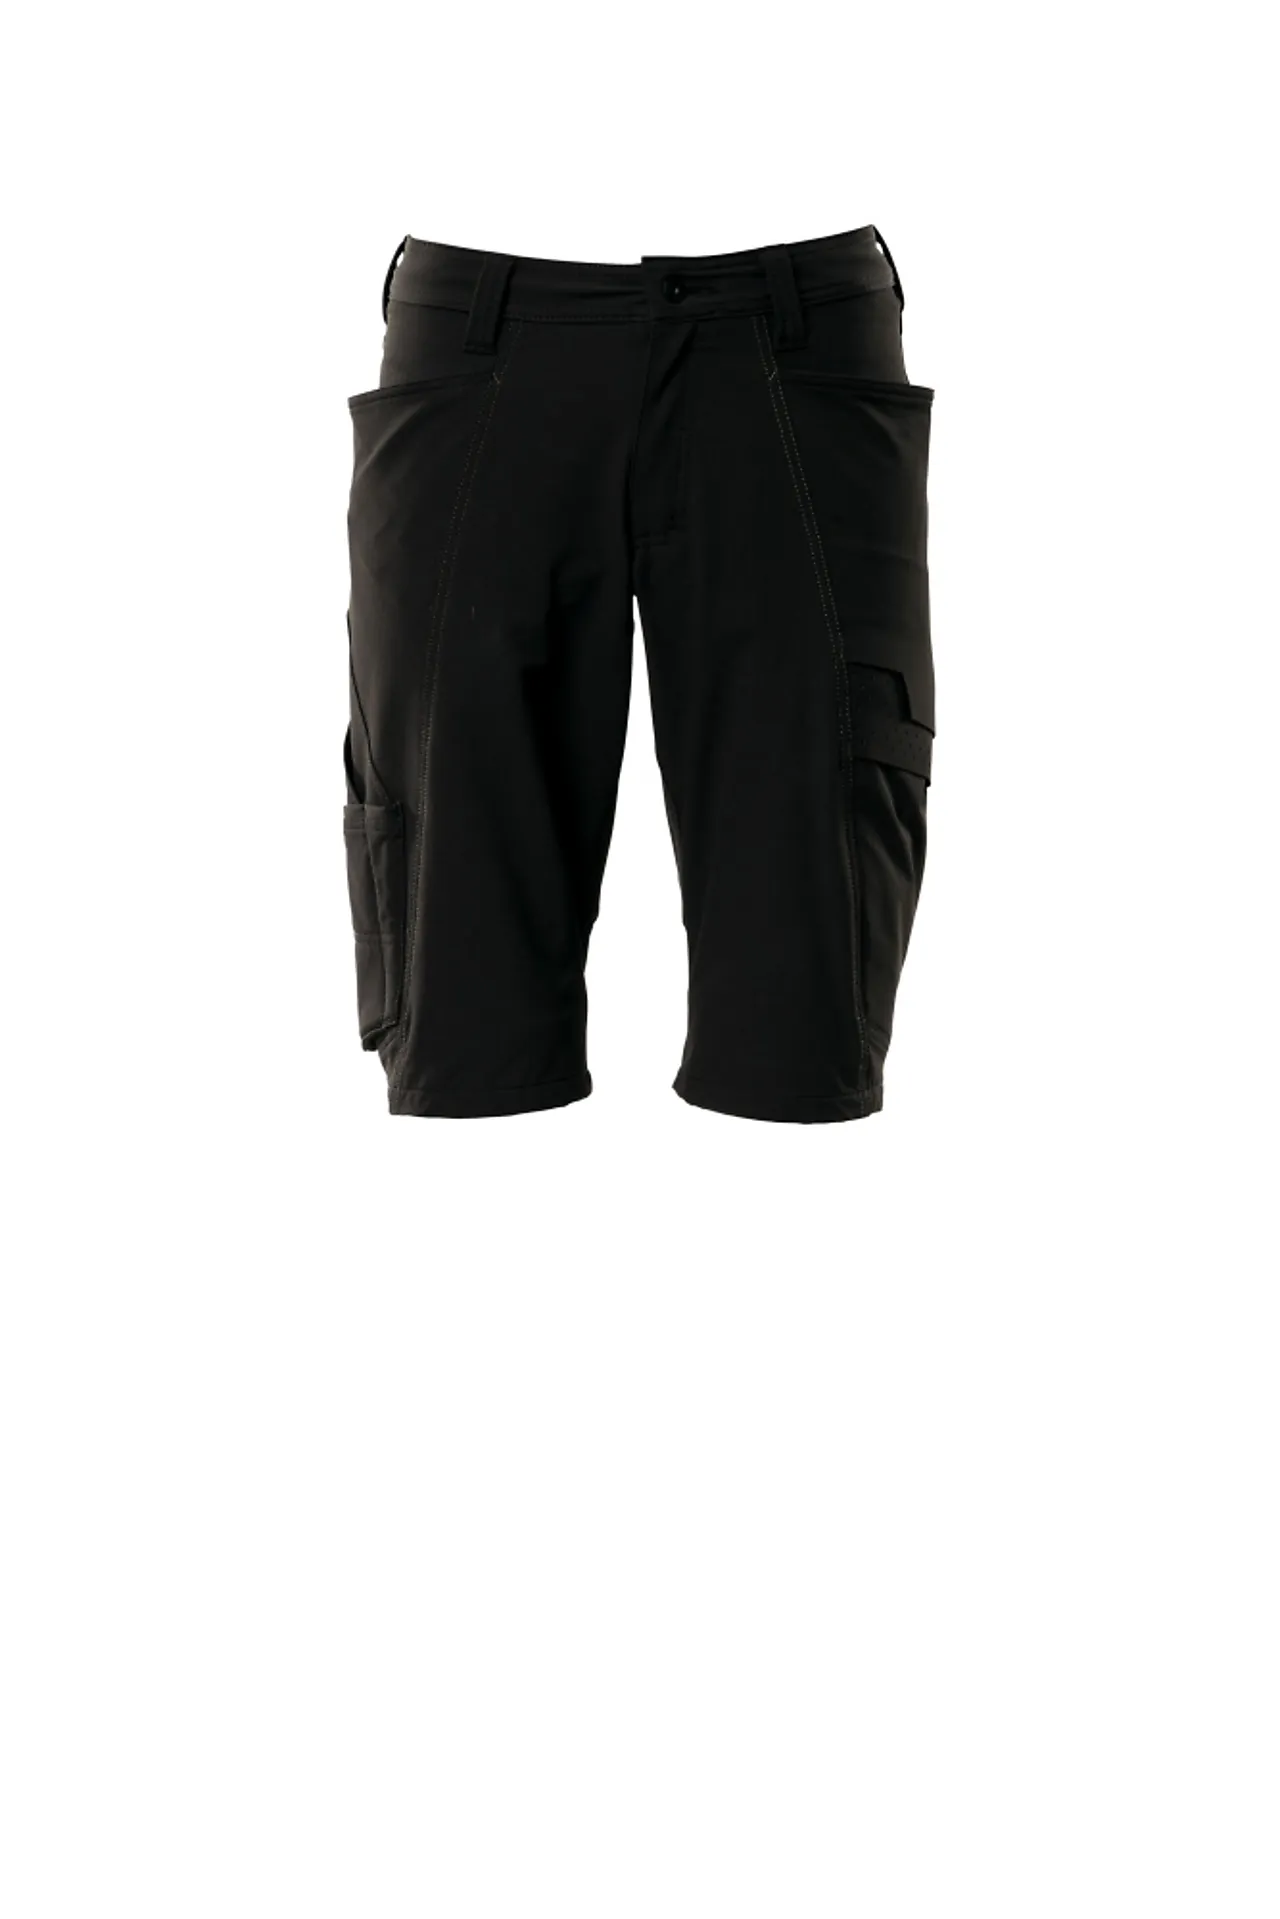 Shorts 18149 svart c52 shorts, fireveis-stretch, lav vekt